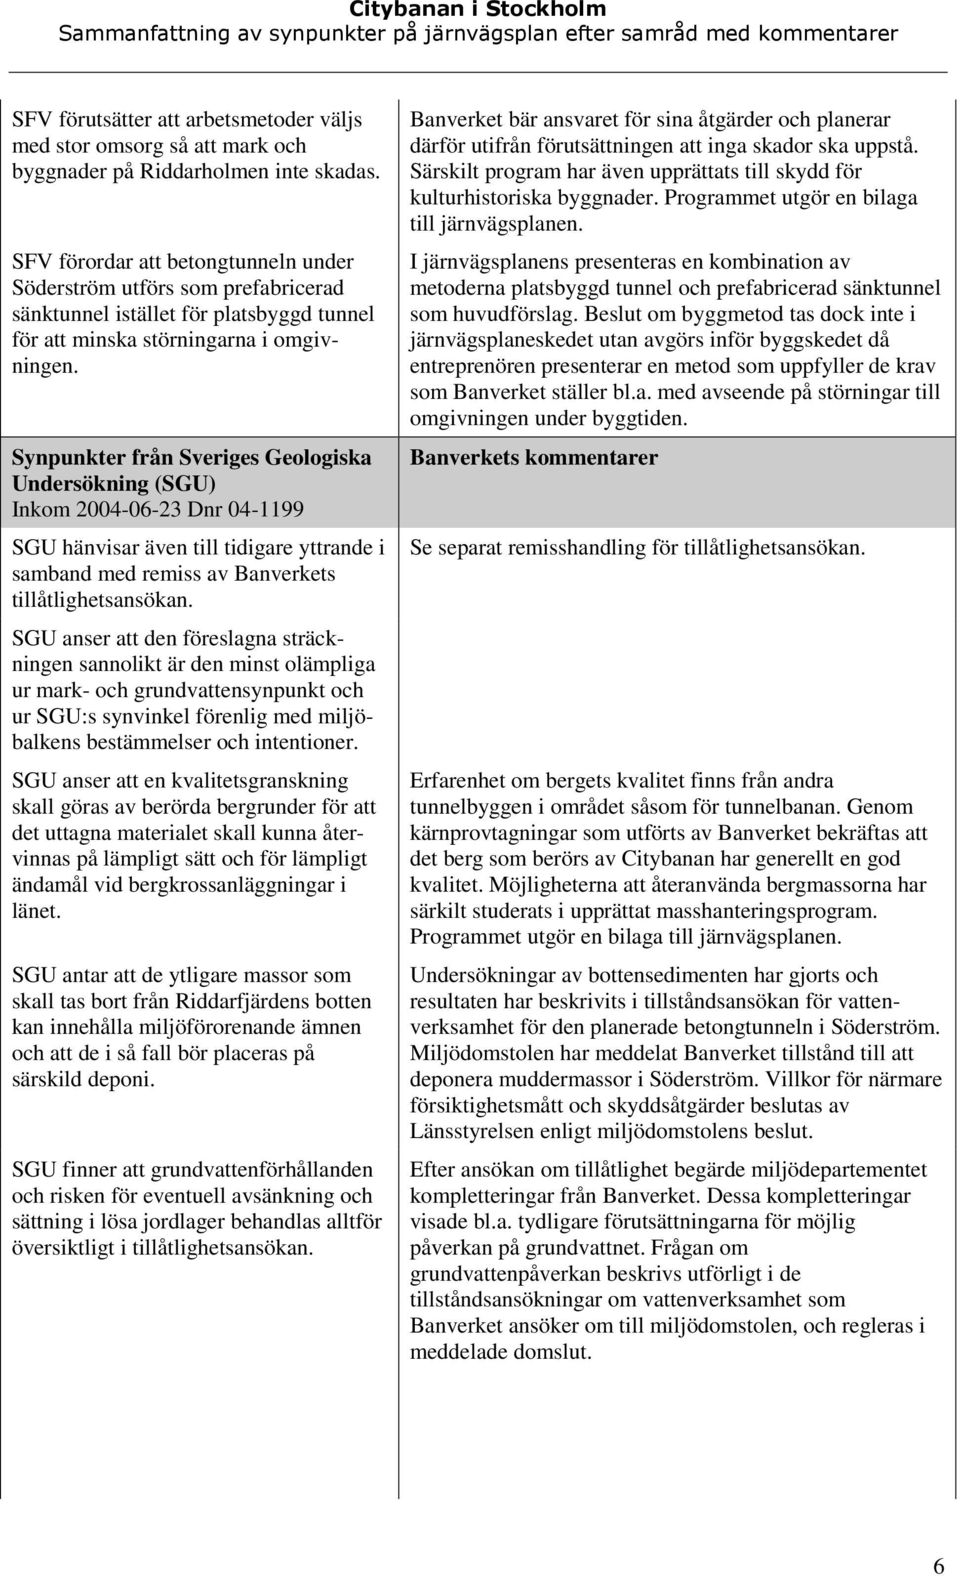 Sveriges Geologiska Undersökning (SGU) Inkom 2004-06-23 Dnr 04-1199 SGU hänvisar även till tidigare yttrande i samband med remiss av Banverkets tillåtlighetsansökan.